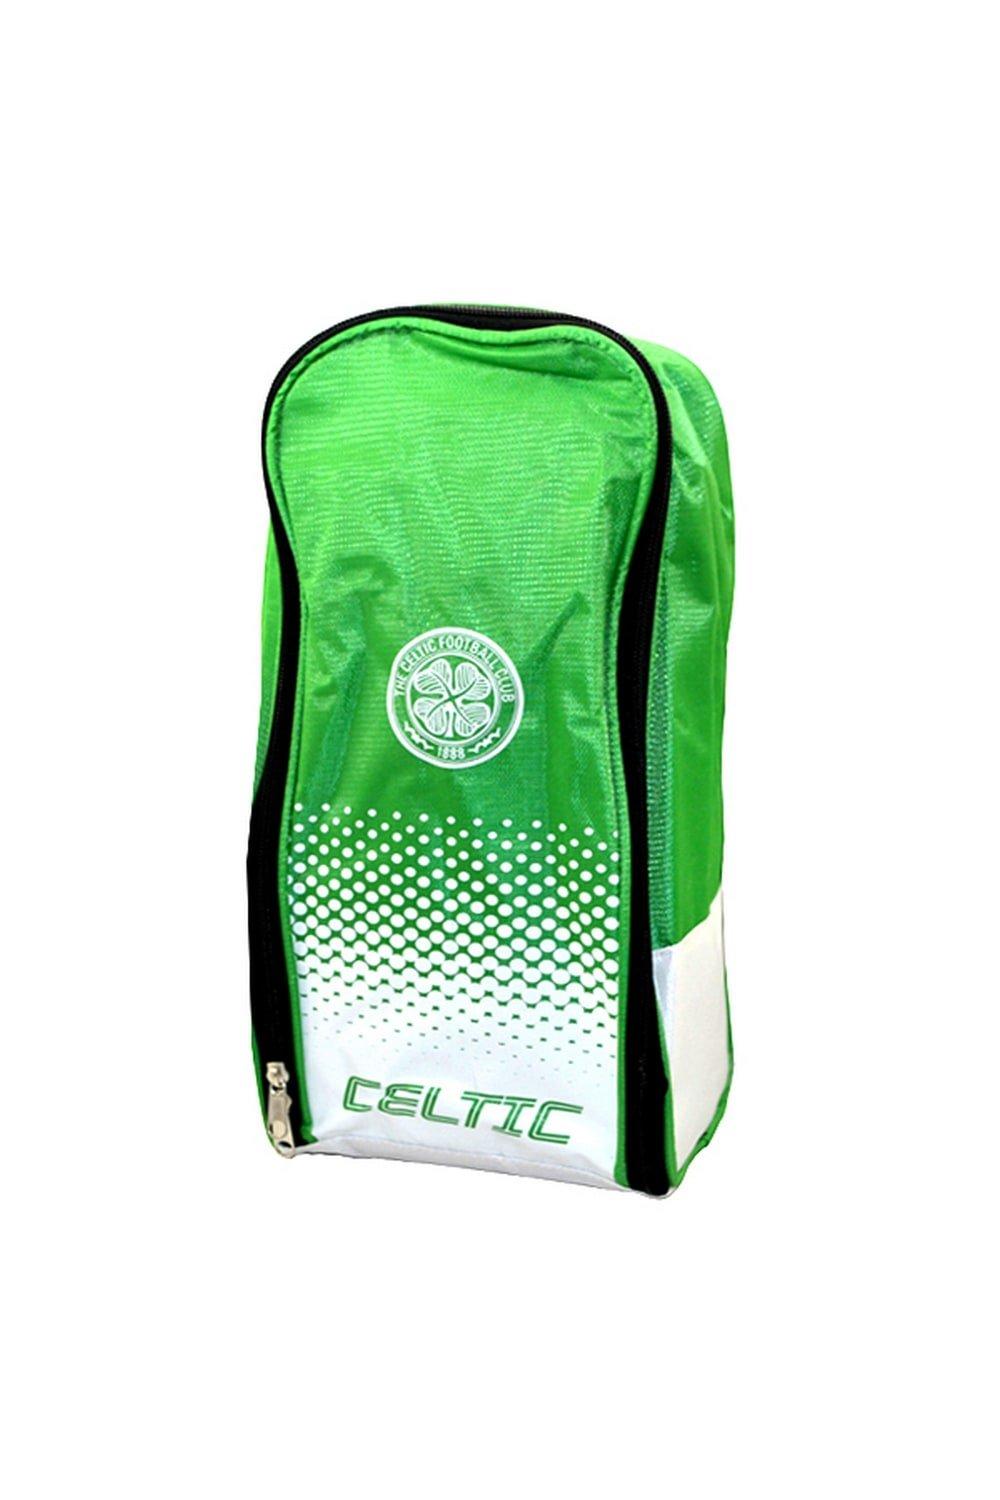 Официальная сумка для обуви Fade Football Crest Design Celtic FC, зеленый celtic теплообменник отопления для котлов celtic ds platinum 2 13 2 16 селтик